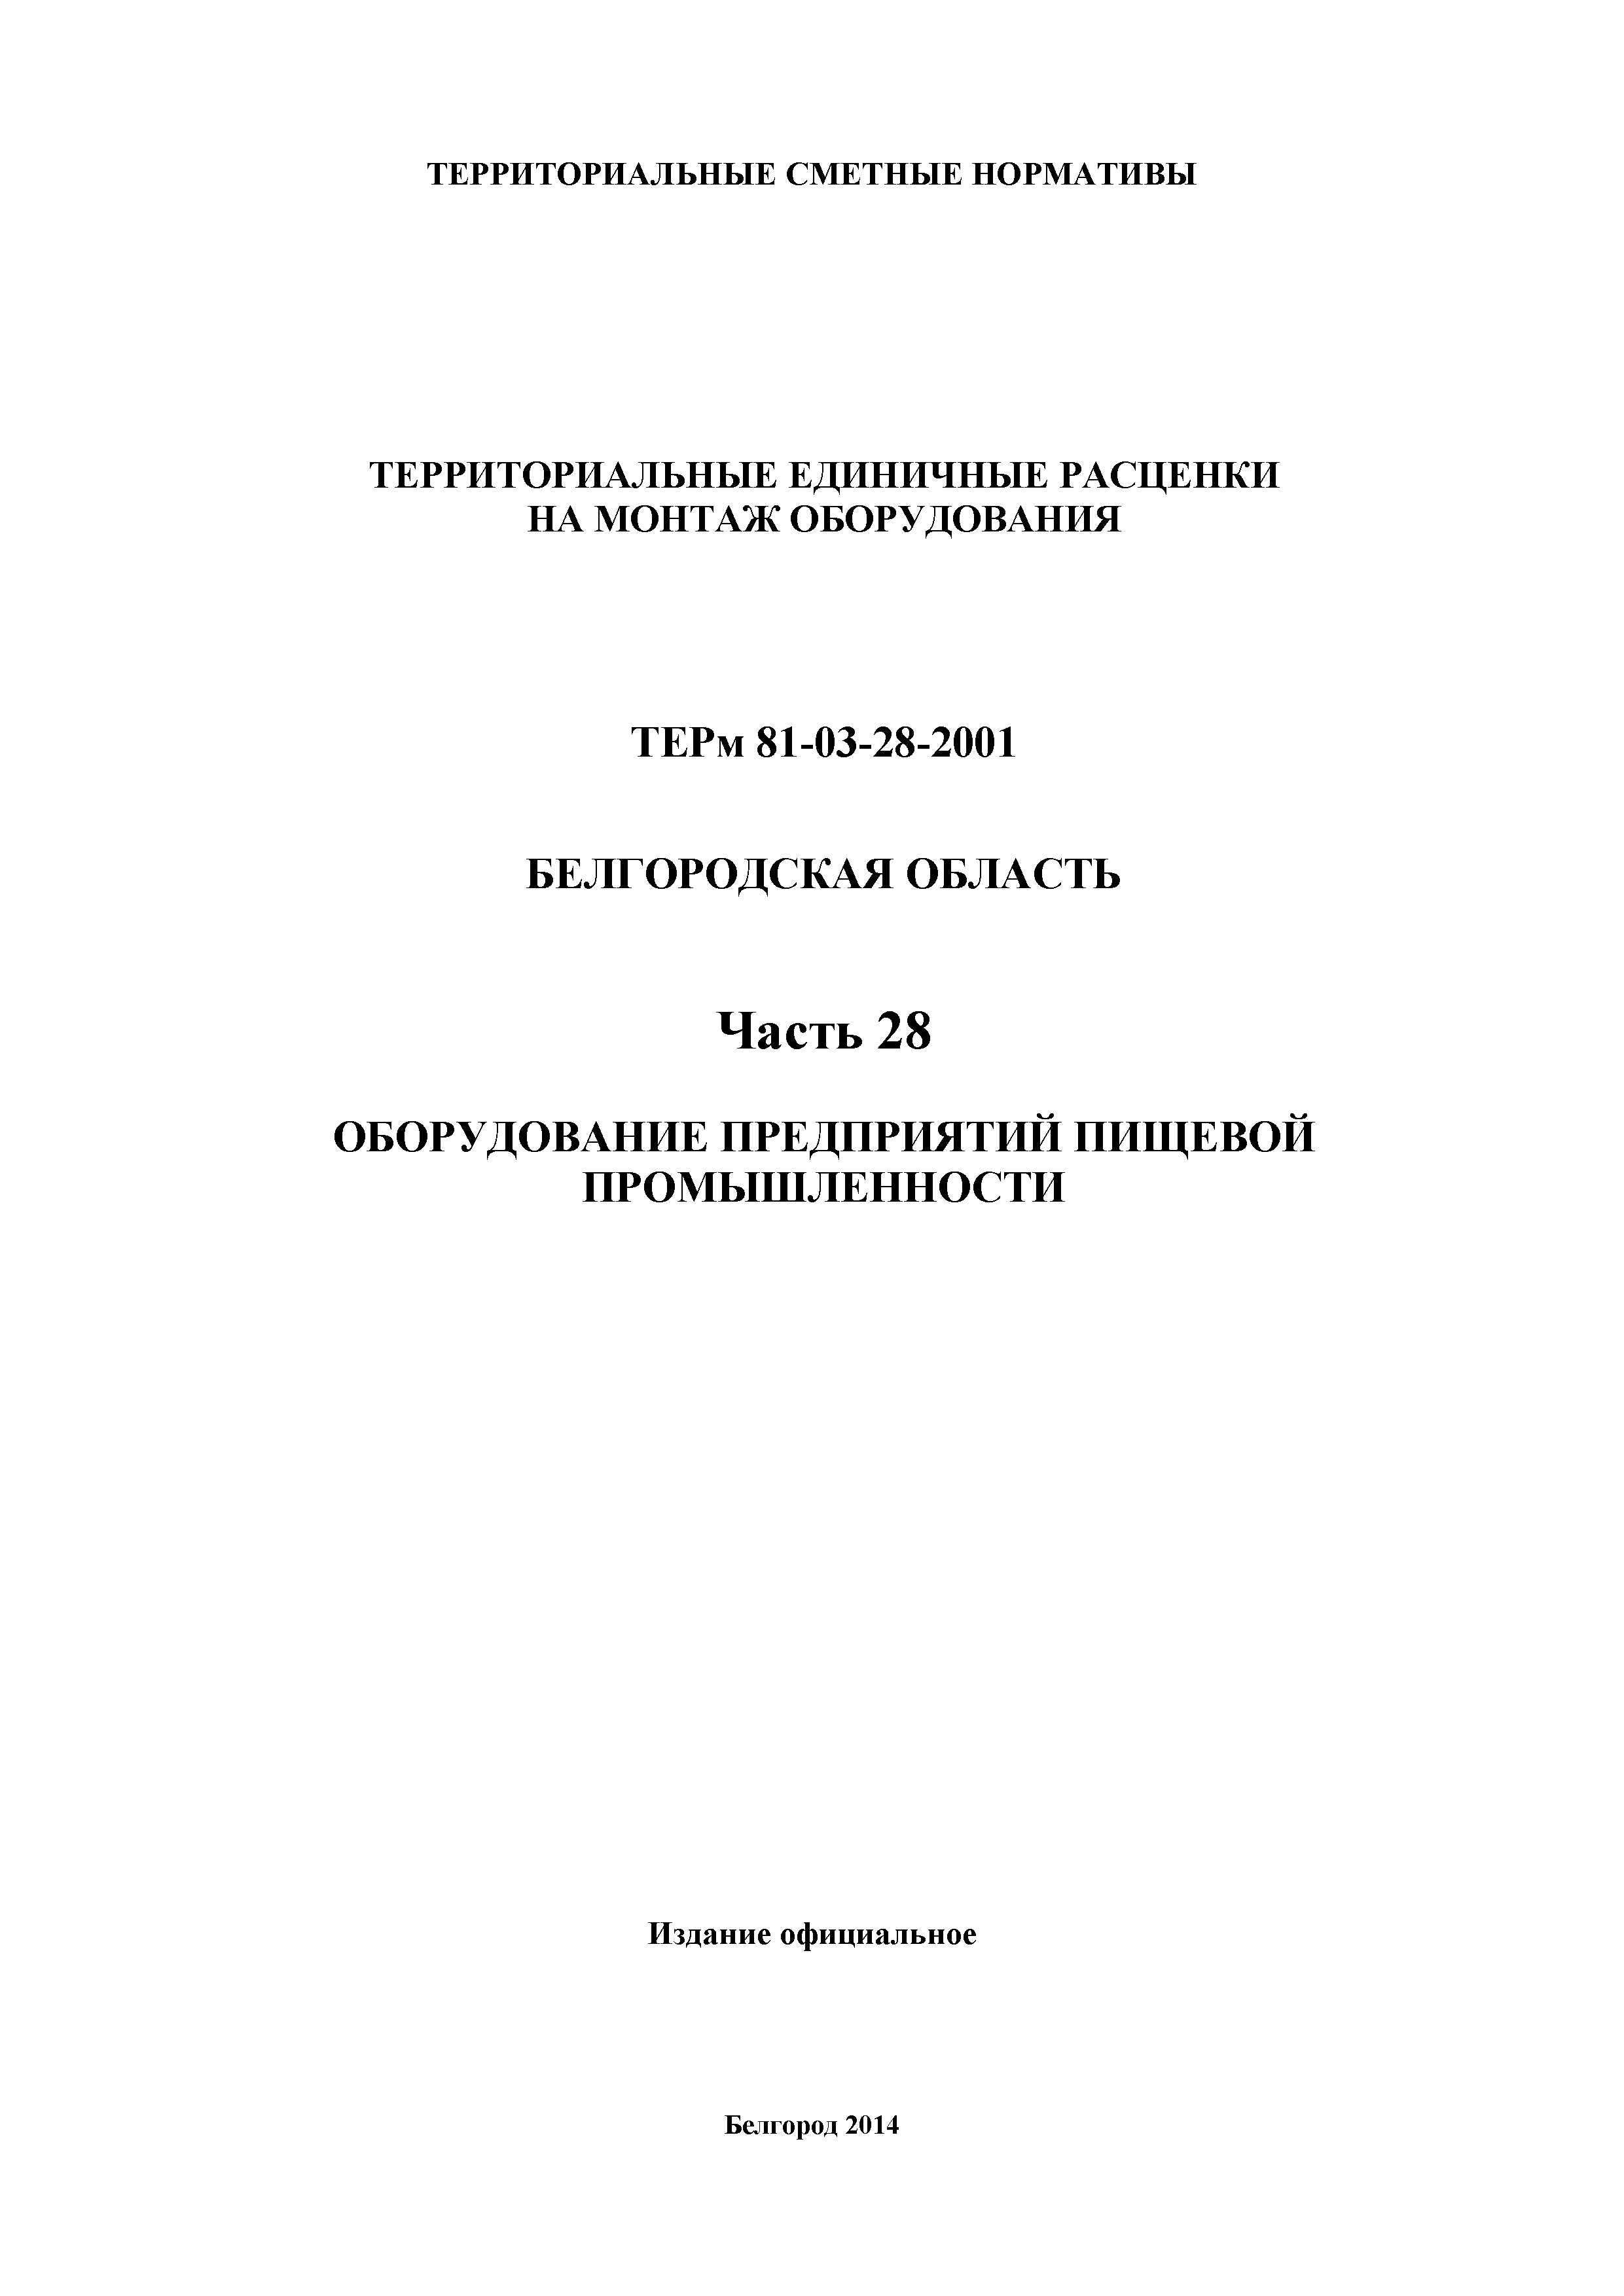 ТЕРм Белгородская область 81-03-28-2001